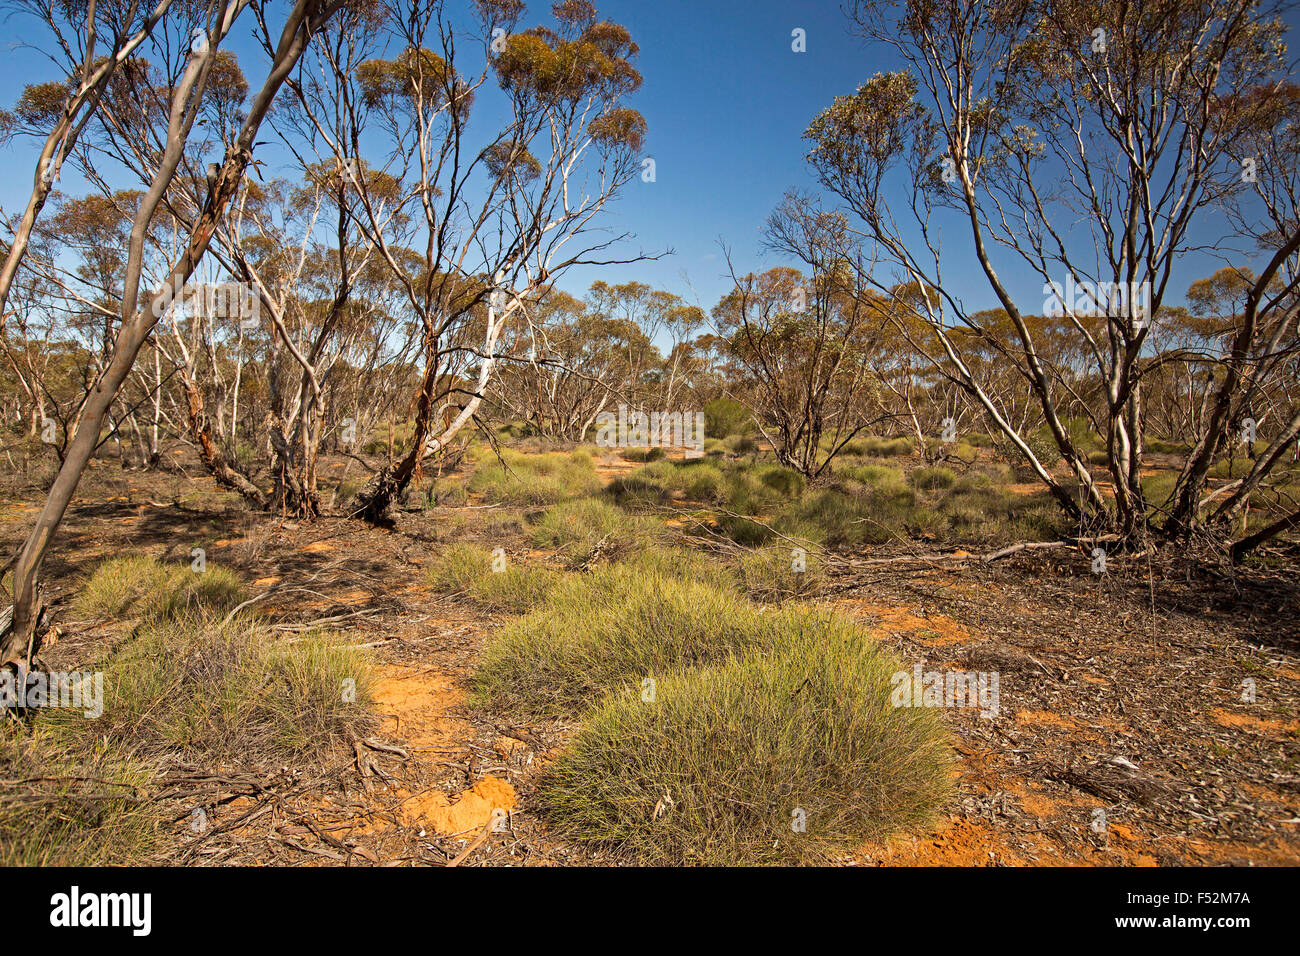 Australische Outback-Landschaft mit Bergen von Spinifex / Stachelschwein Rasen wächst unter Mallee Wälder im Mungo National Park NSW Australia Stockfoto